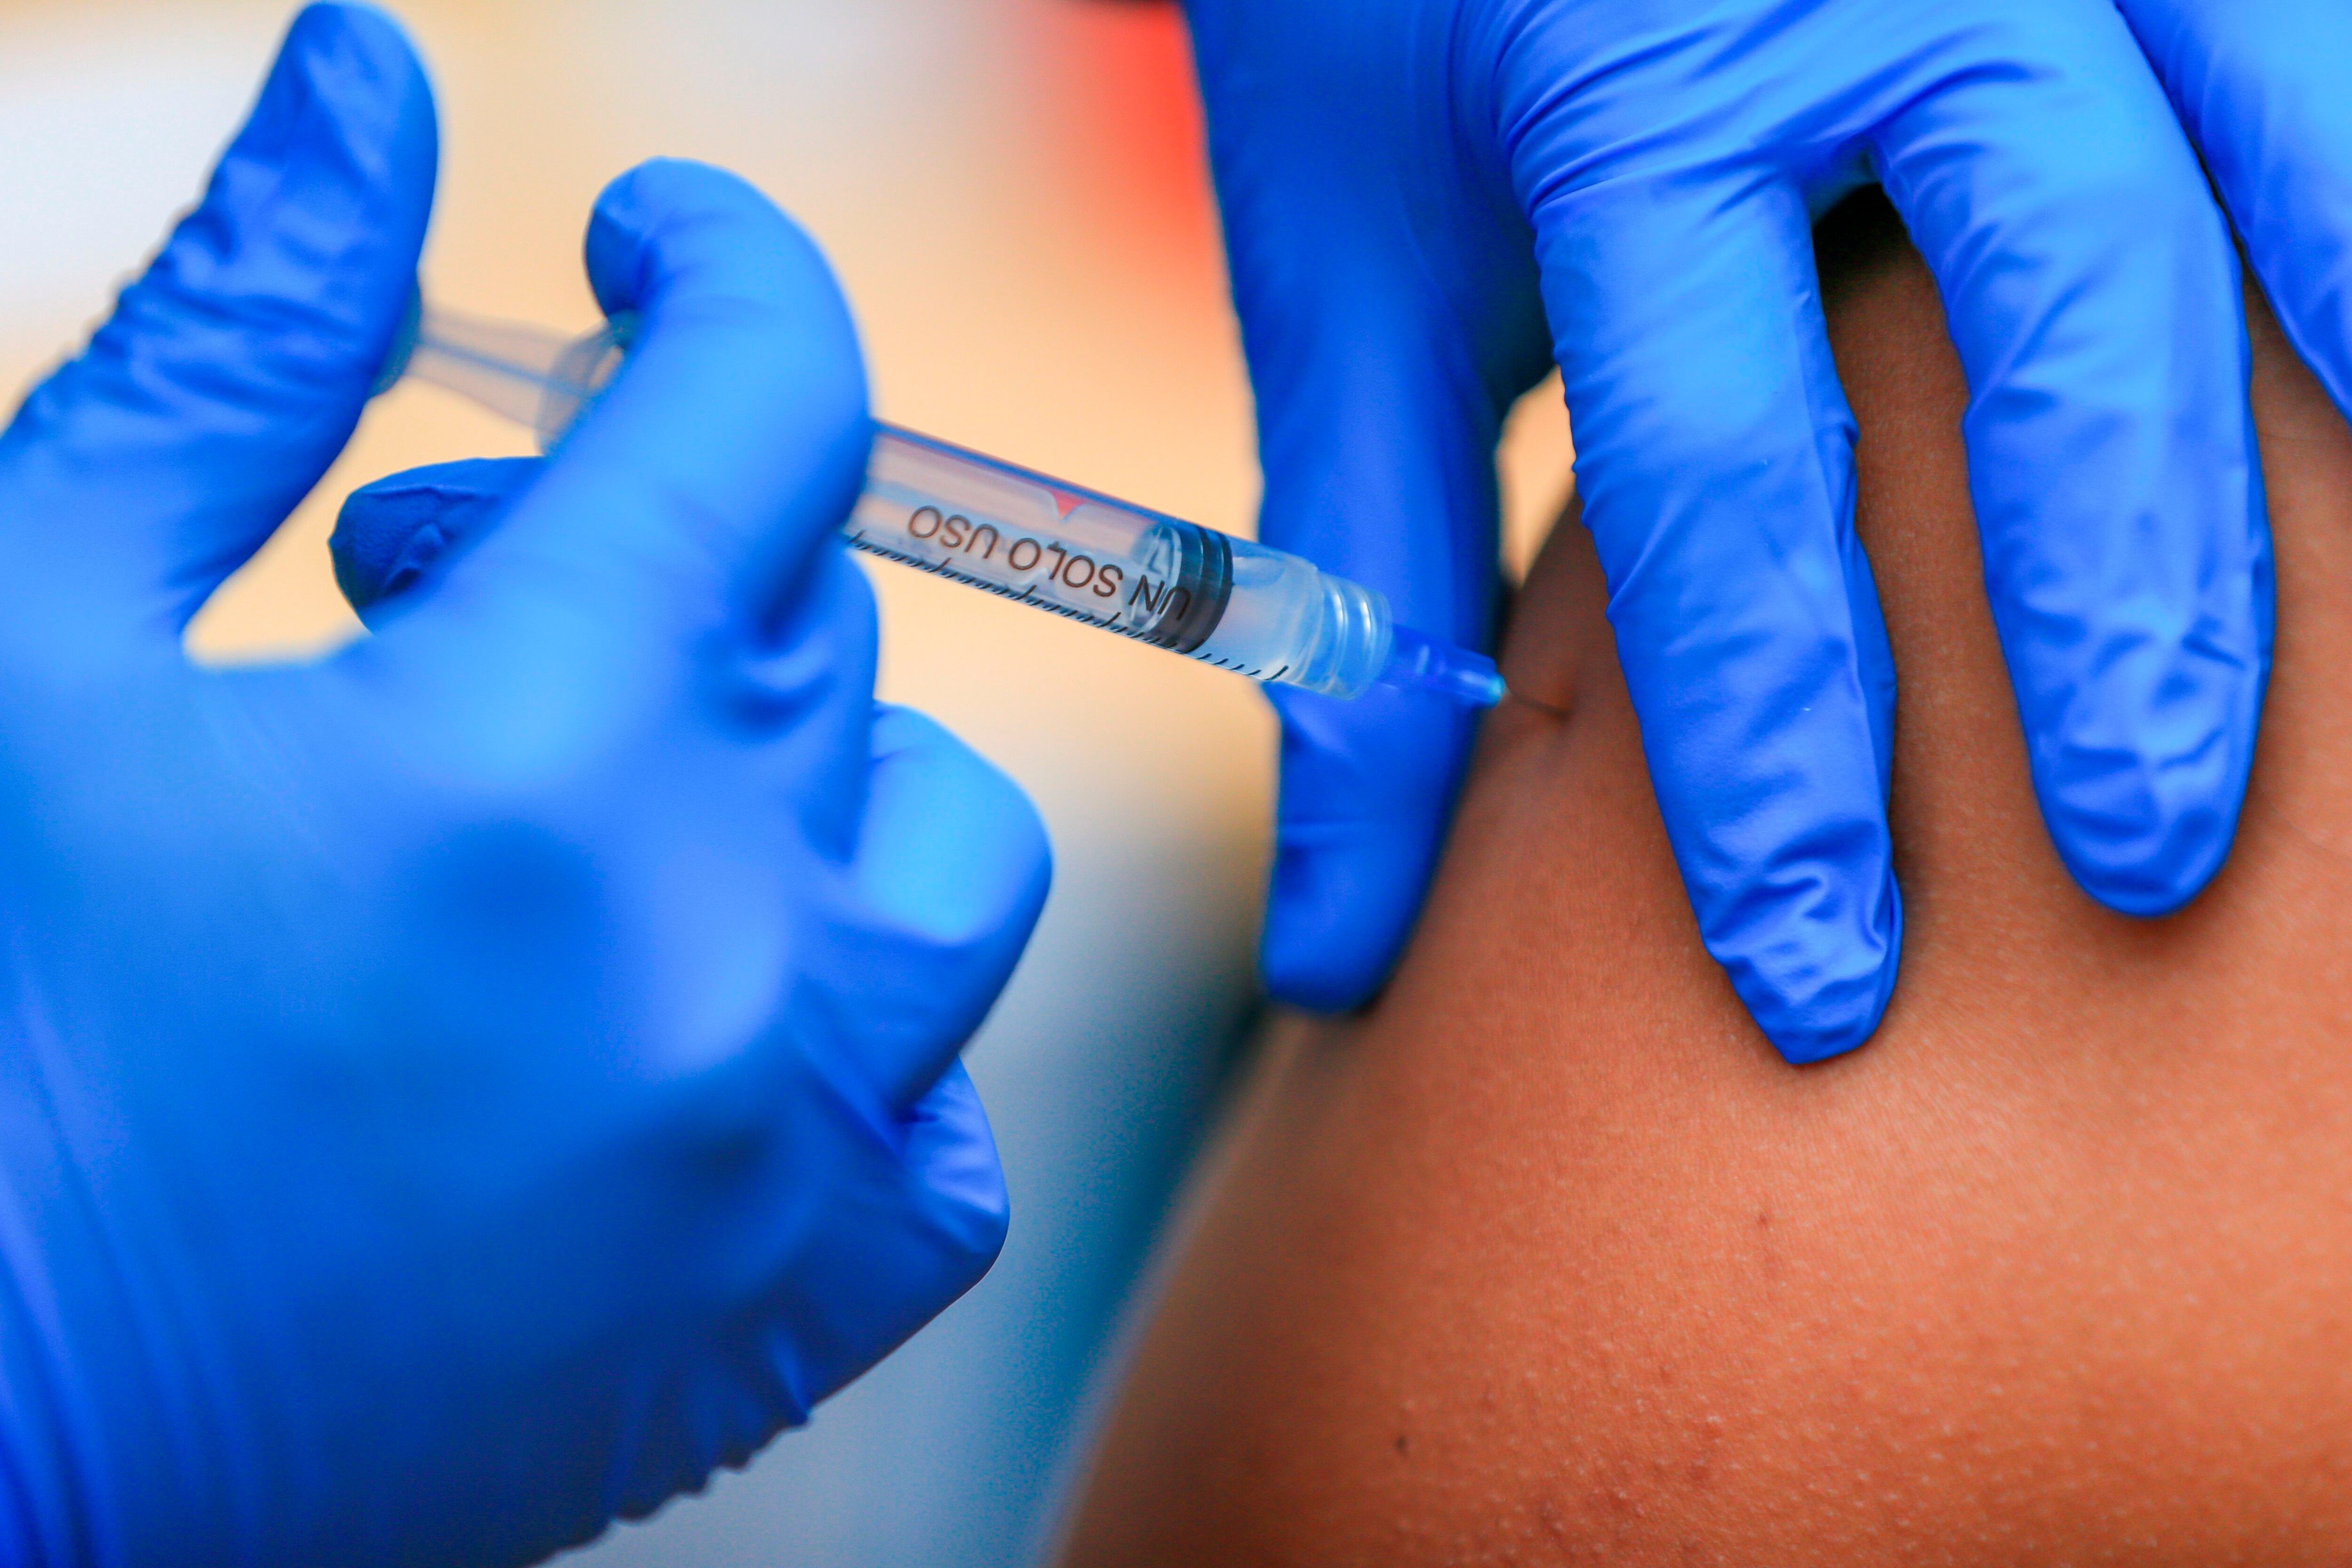 Estados Unidos donó 200 millones de vacunas contra el COVID-19 a más de 100 países